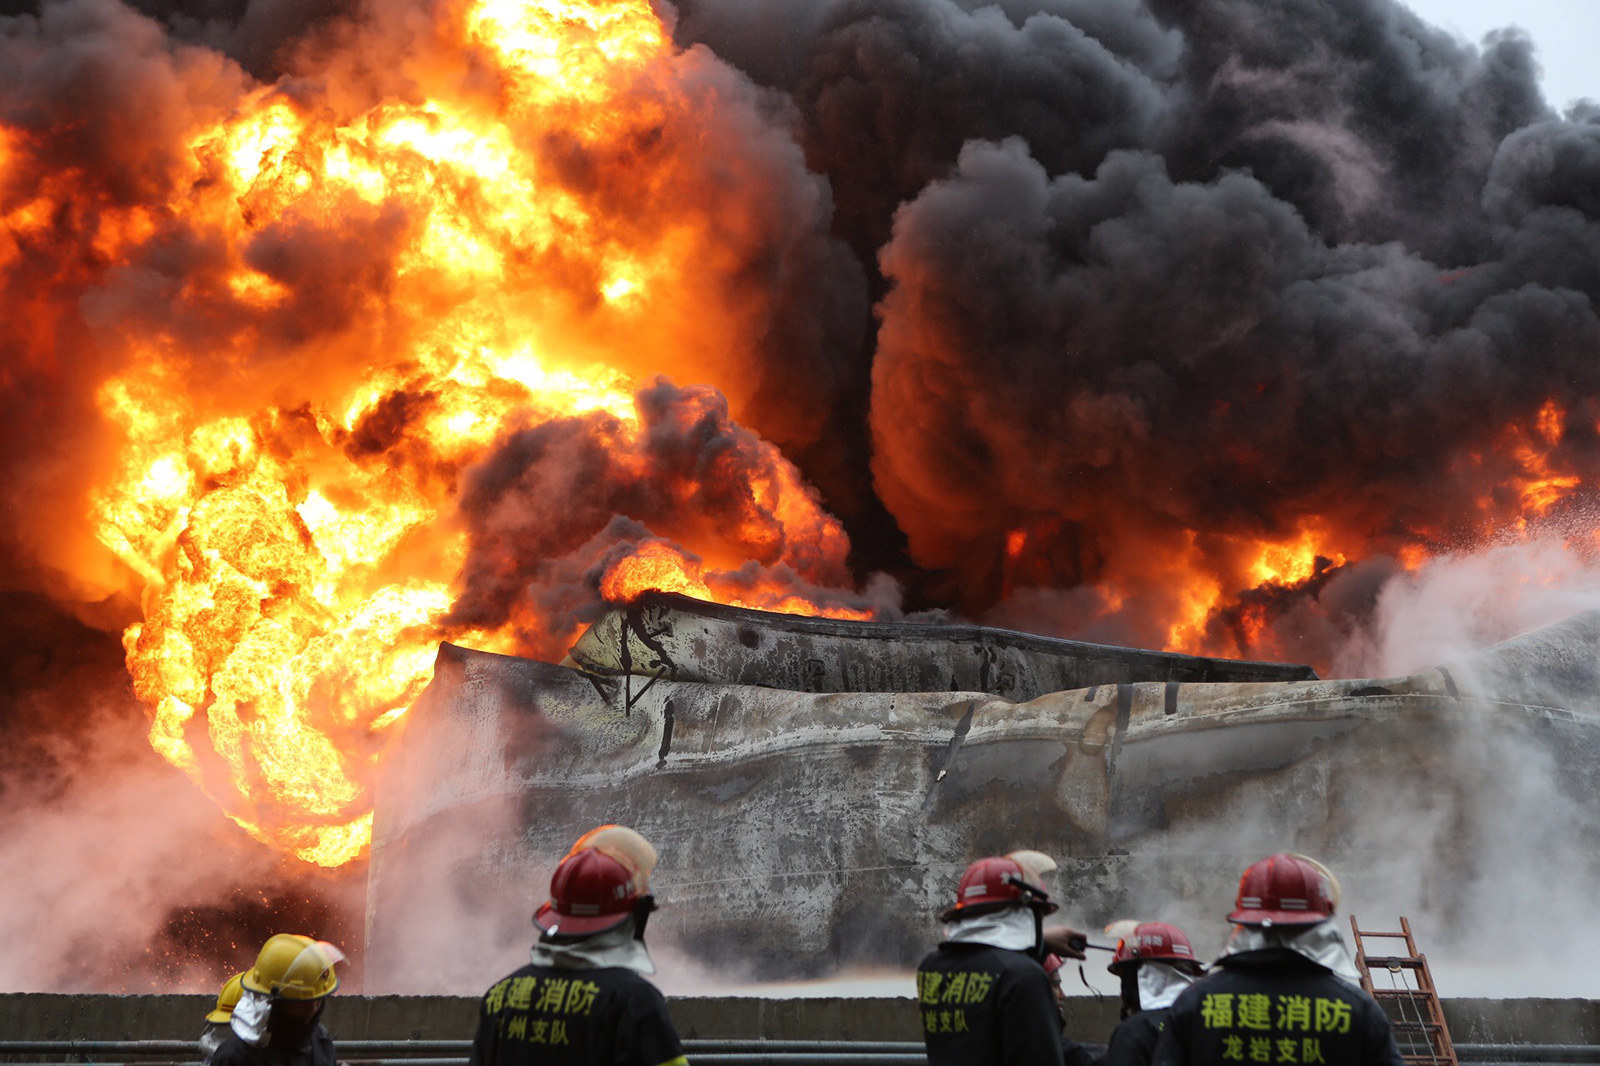 Пожар является чрезвычайной ситуацией. Взрывы на химическом заводе в городе Цзилинь. Взрывы на химическом заводе в городе Цзилинь (Китай). Сучжоу Китай химическая авария 1978. Взрыв на заводе в Китае 2005 в Цзилине.